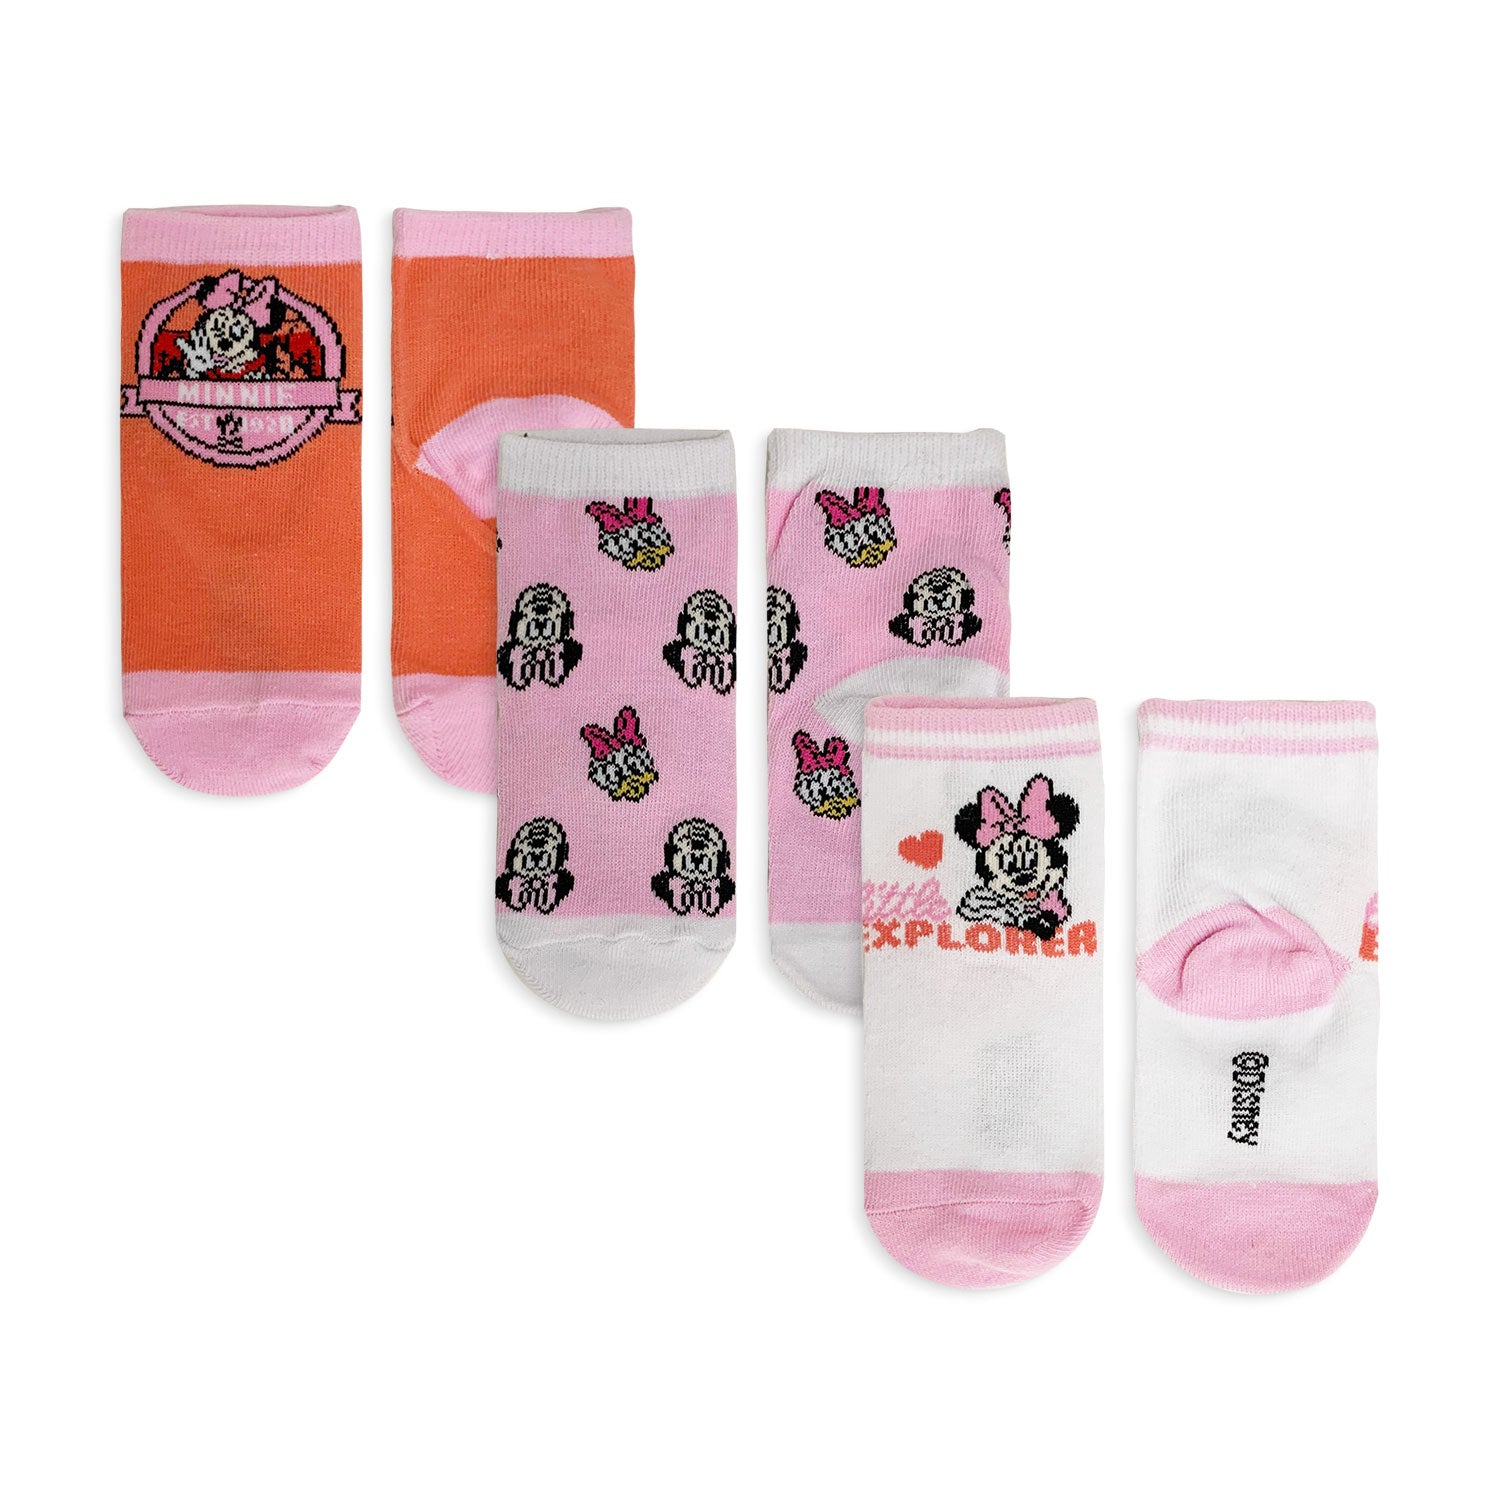 Calzini corti Disney Minnie Mouse 3 paia per neonato bimba in filato cotone 5196